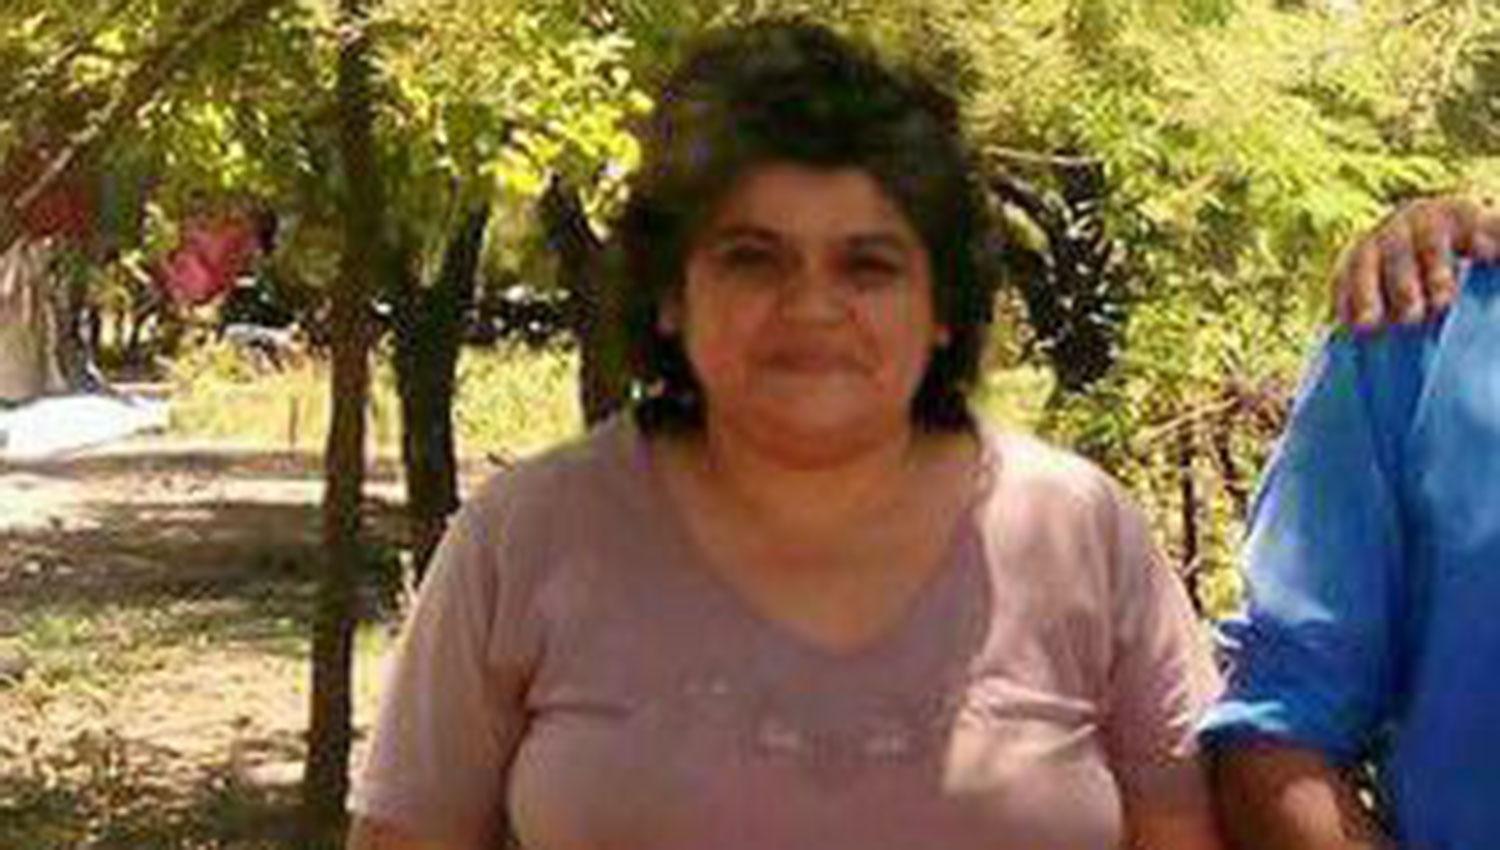 La autopsia determinó que Vallejos fue asesinada. FOTO TOMADA DE WWW.FACEBOOK.COM/GRANEROSAVANZA